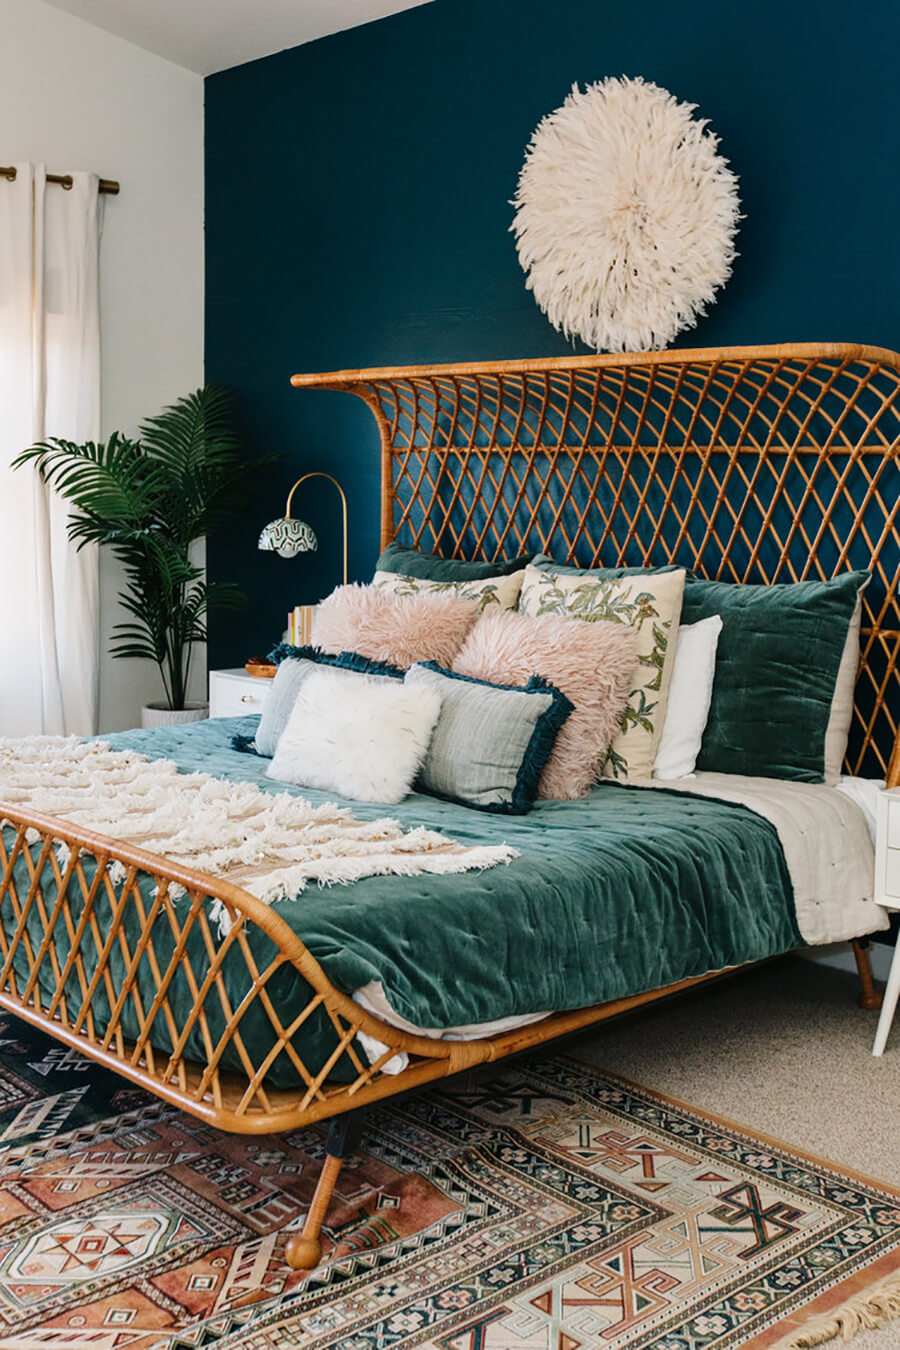 dormitorio de estilo vintage: cama con respaldo de cannage y cubrecama de terciopelo